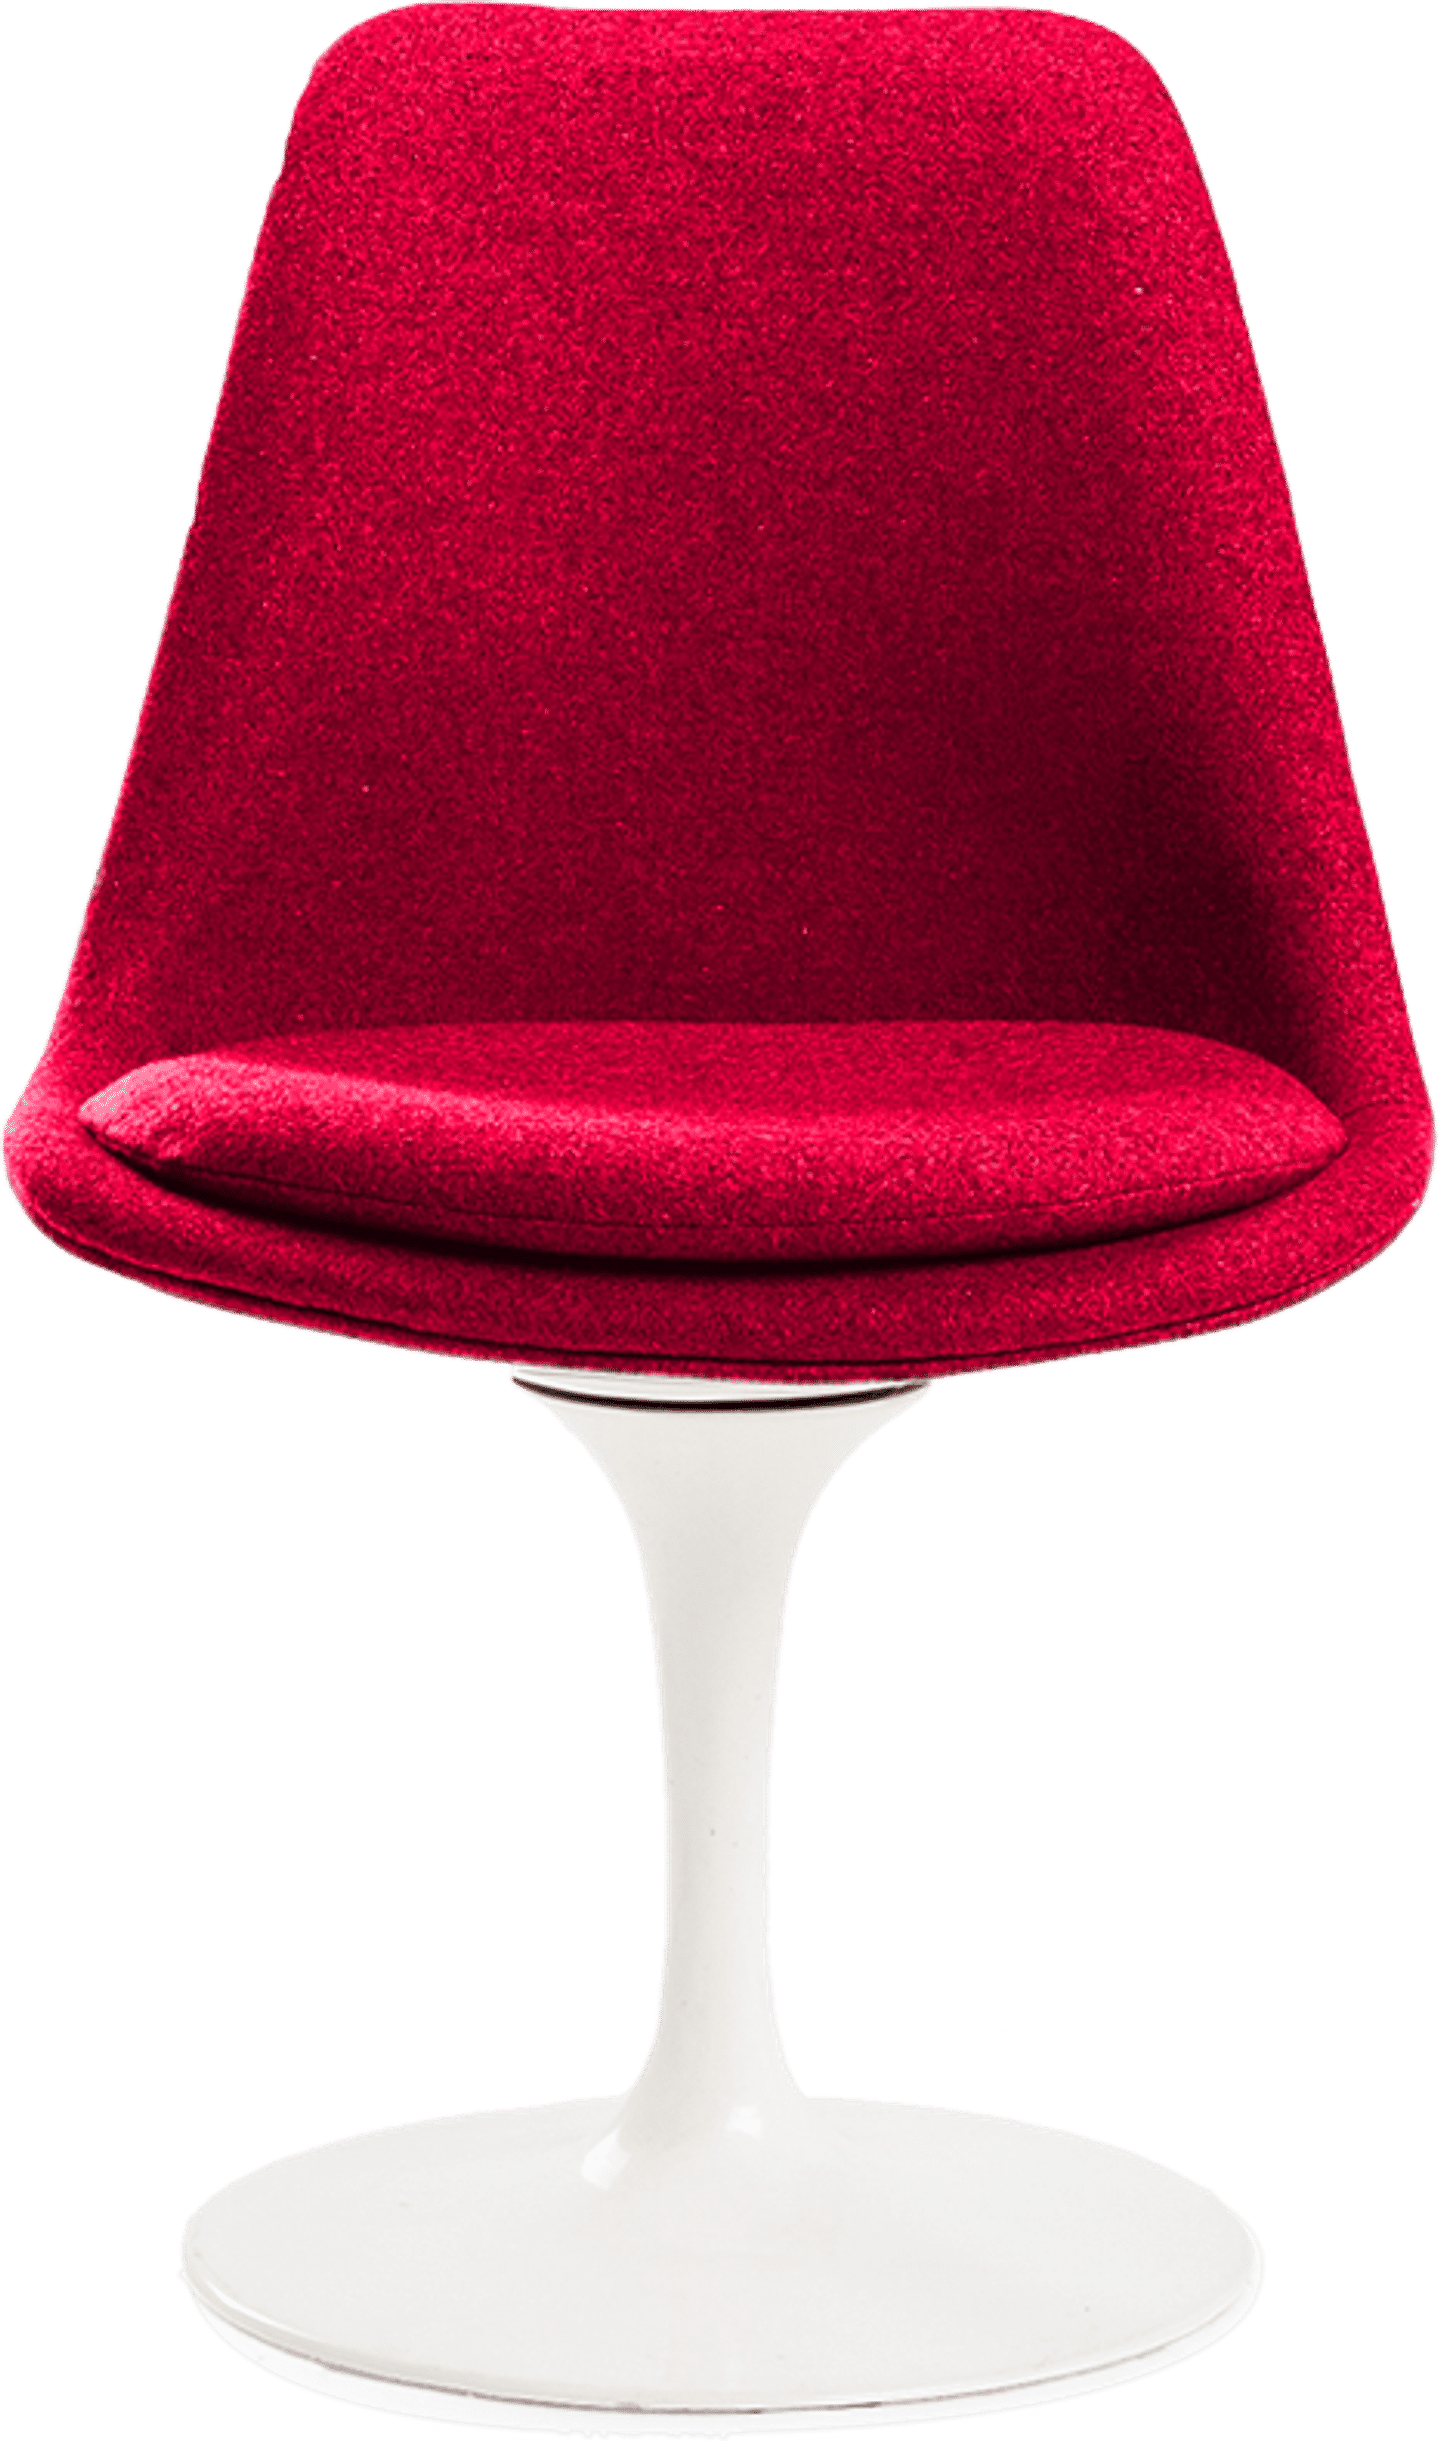 Tulip stol klädd Red image.